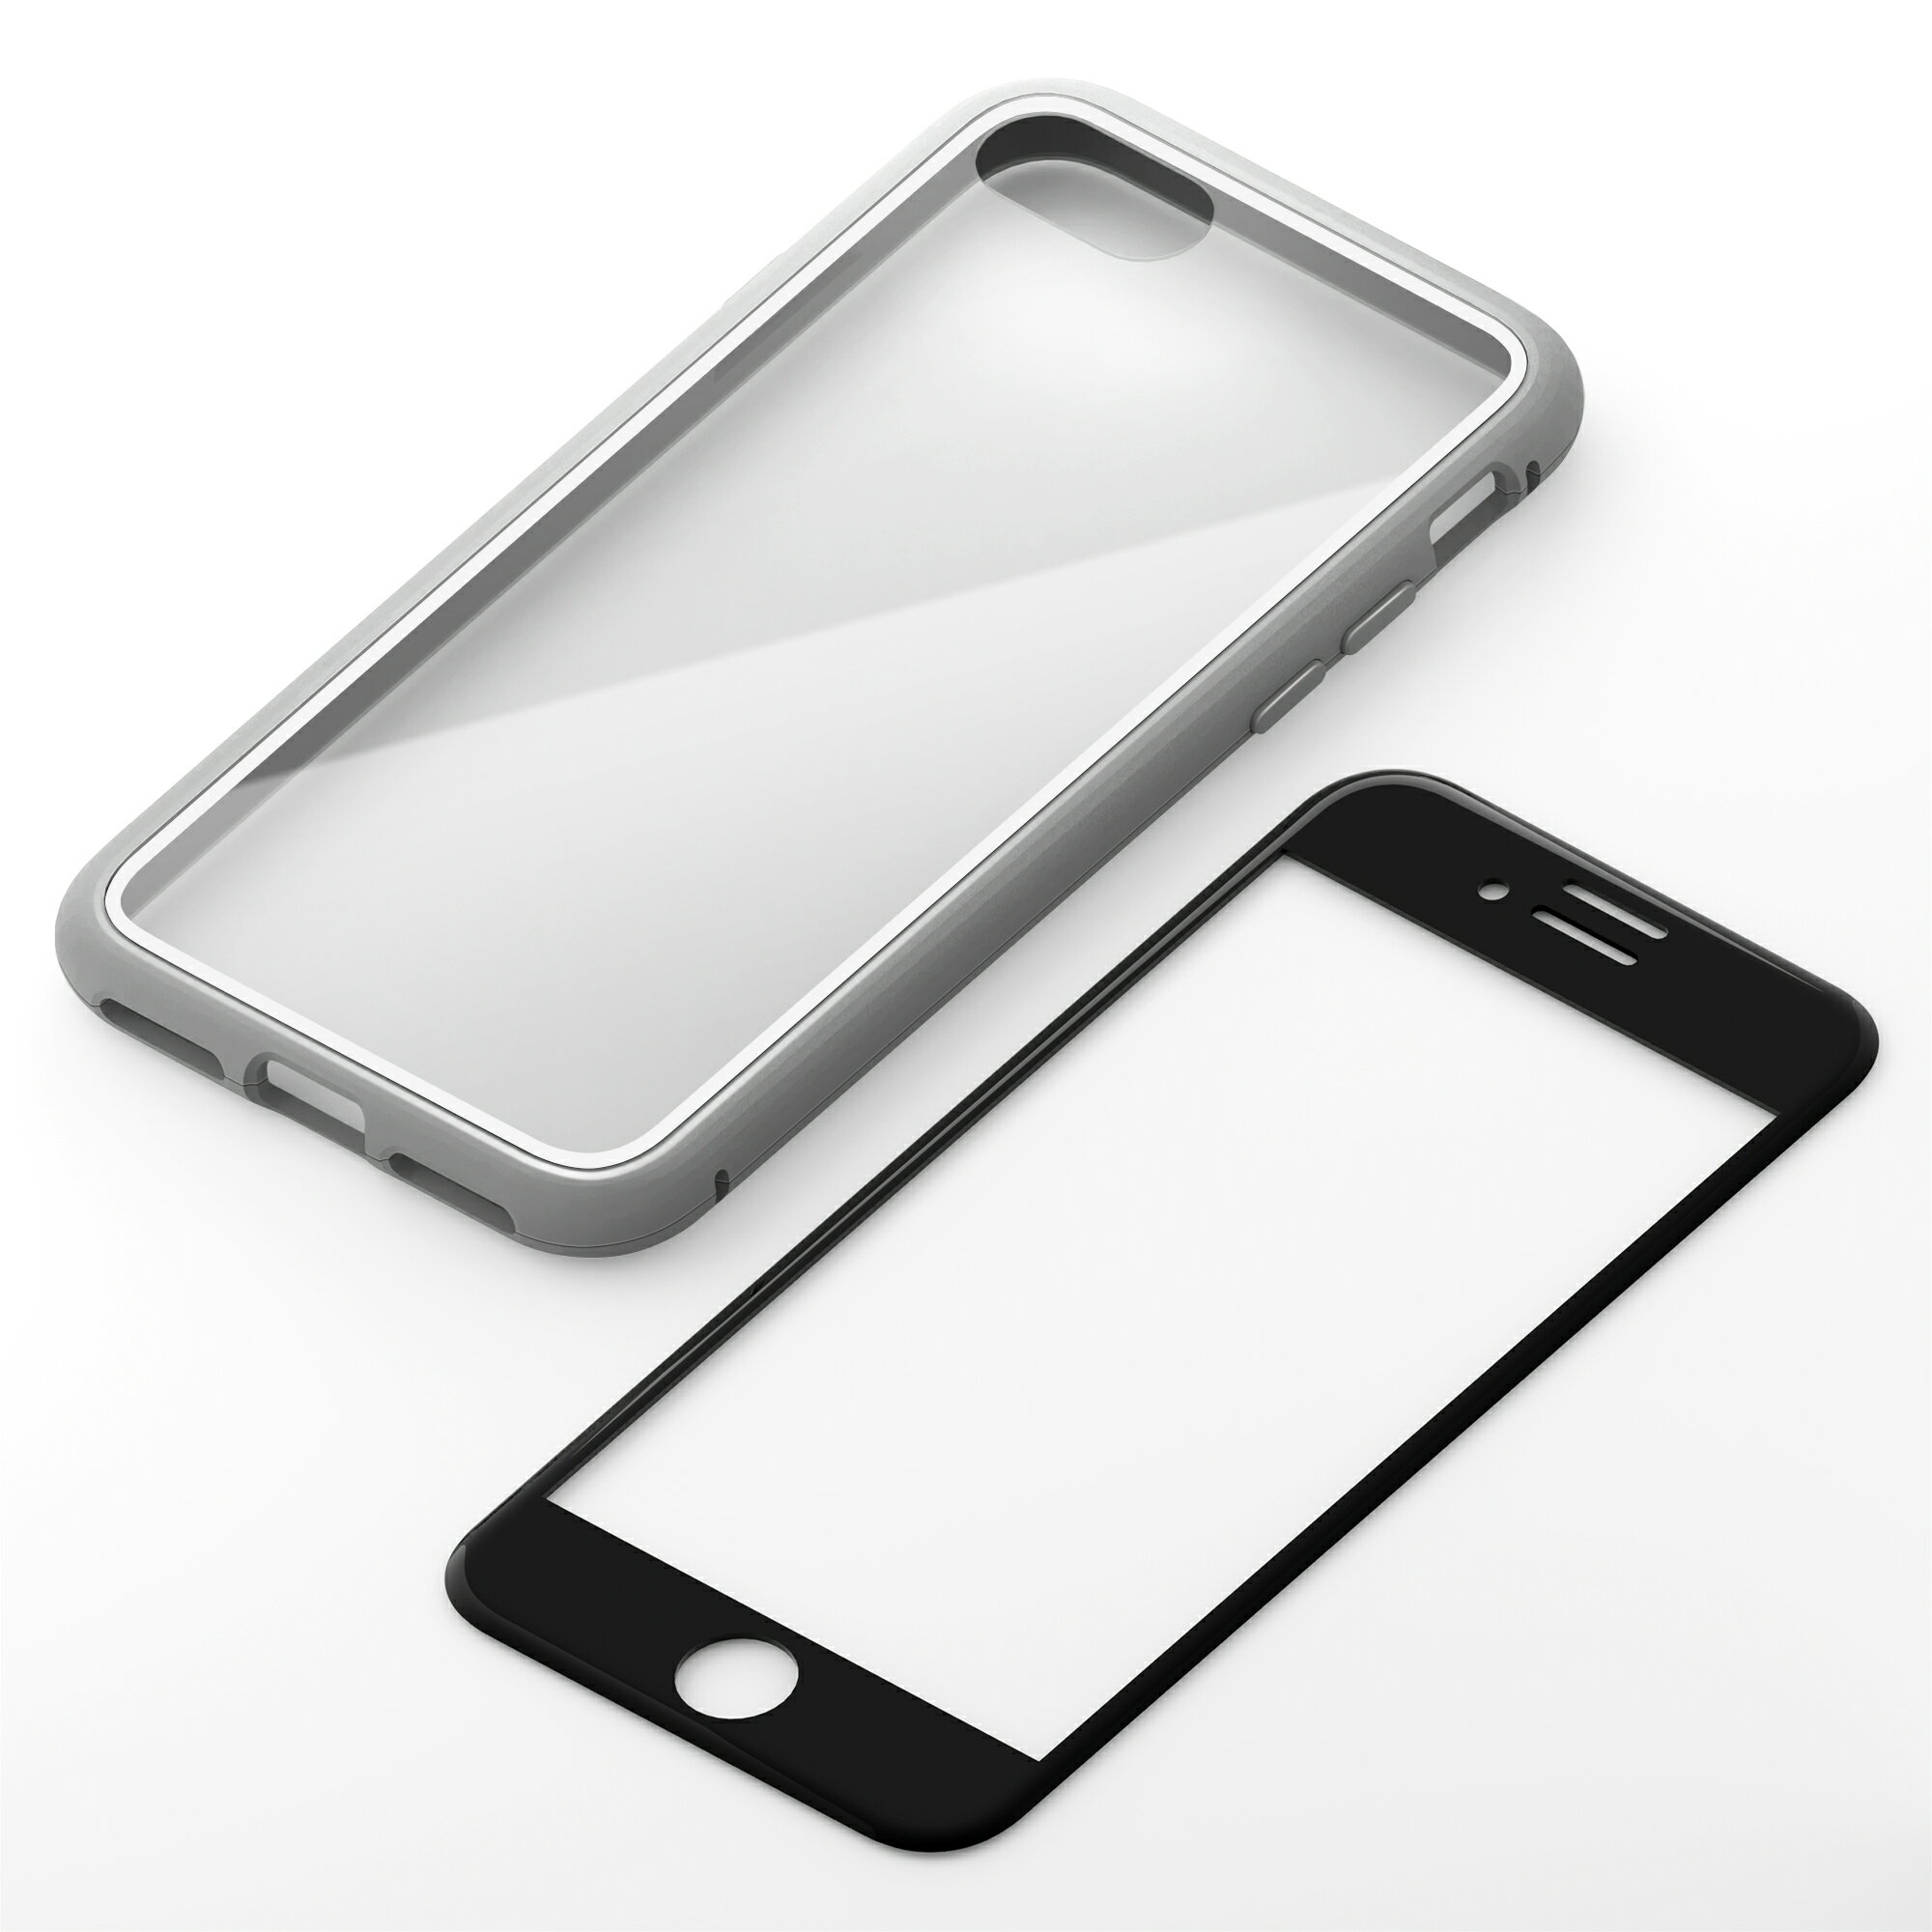 2022年 iPhone SE3 4.7inch スマートフォンケース 360°フルカバーケース 背面クリア シルバー ケースタイプ iPhone SE 2022 第3世代 2020 第2世代 iPhone8 7 6s 6 PG-22MFC02SV PGA PG-22MFC02…